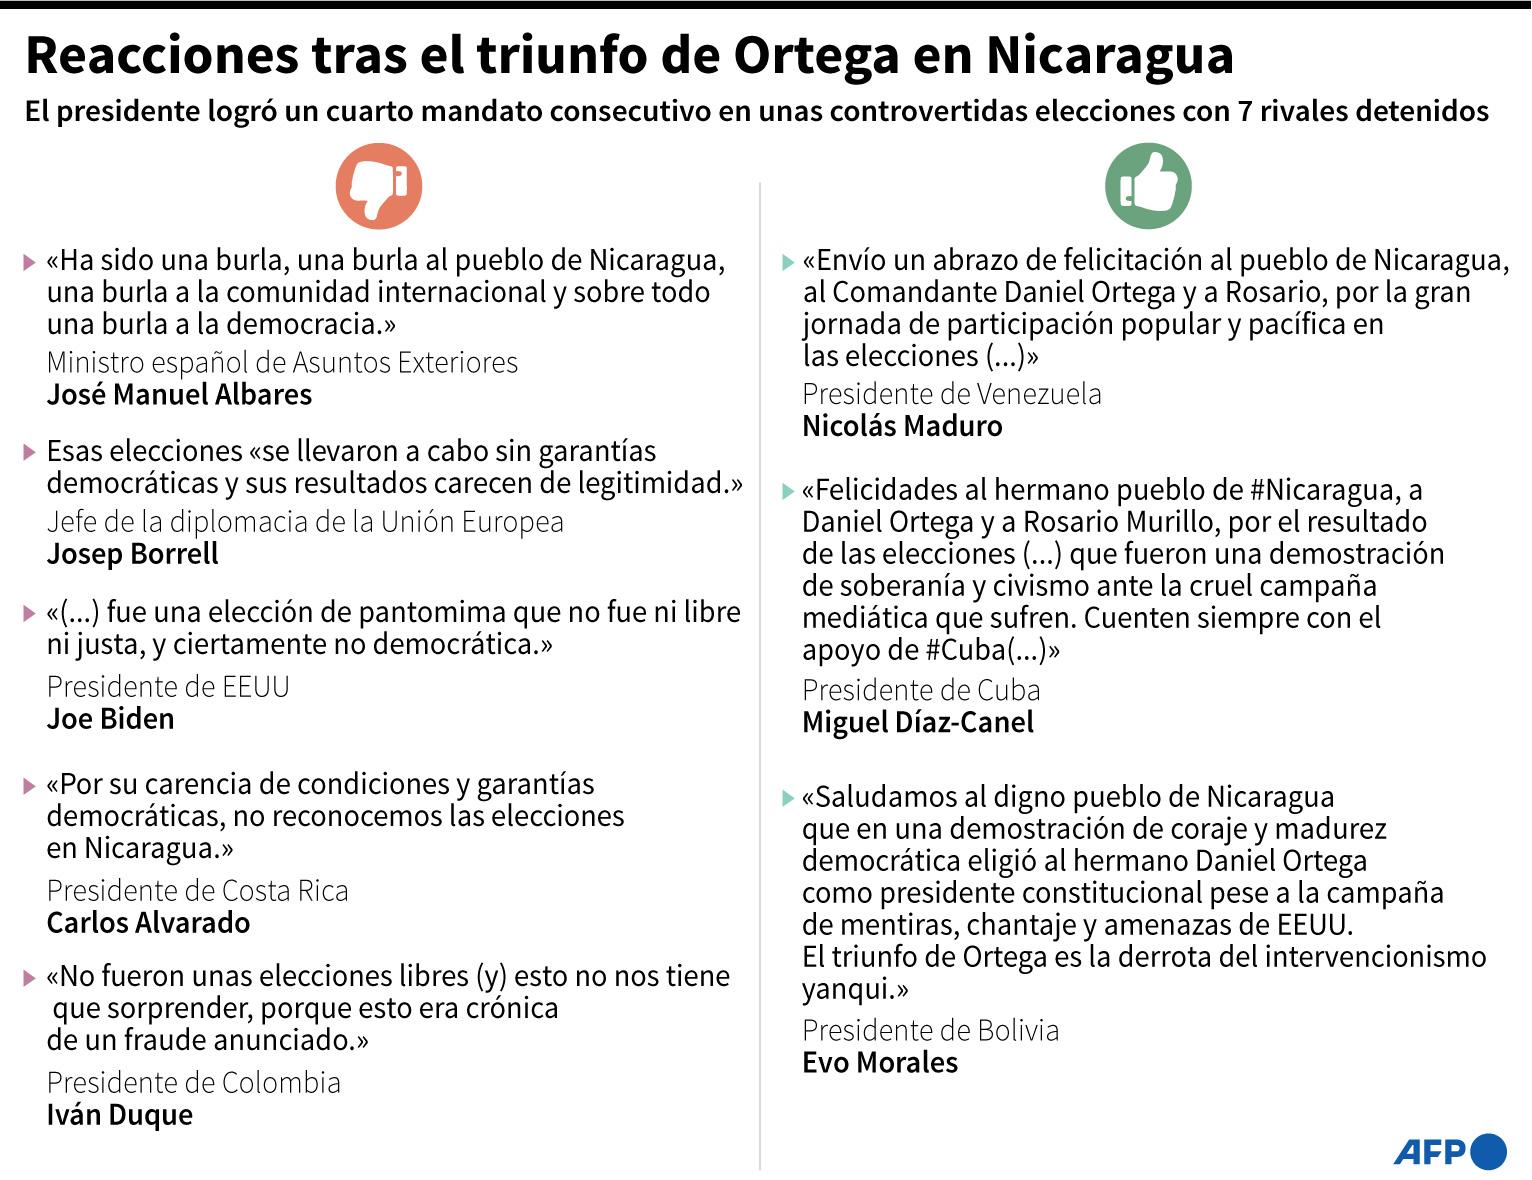 Algunas de las reacciones tras el triunfo de de Daniel Ortega en las elecciones presidenciales Nicaragua - AFP / AFP